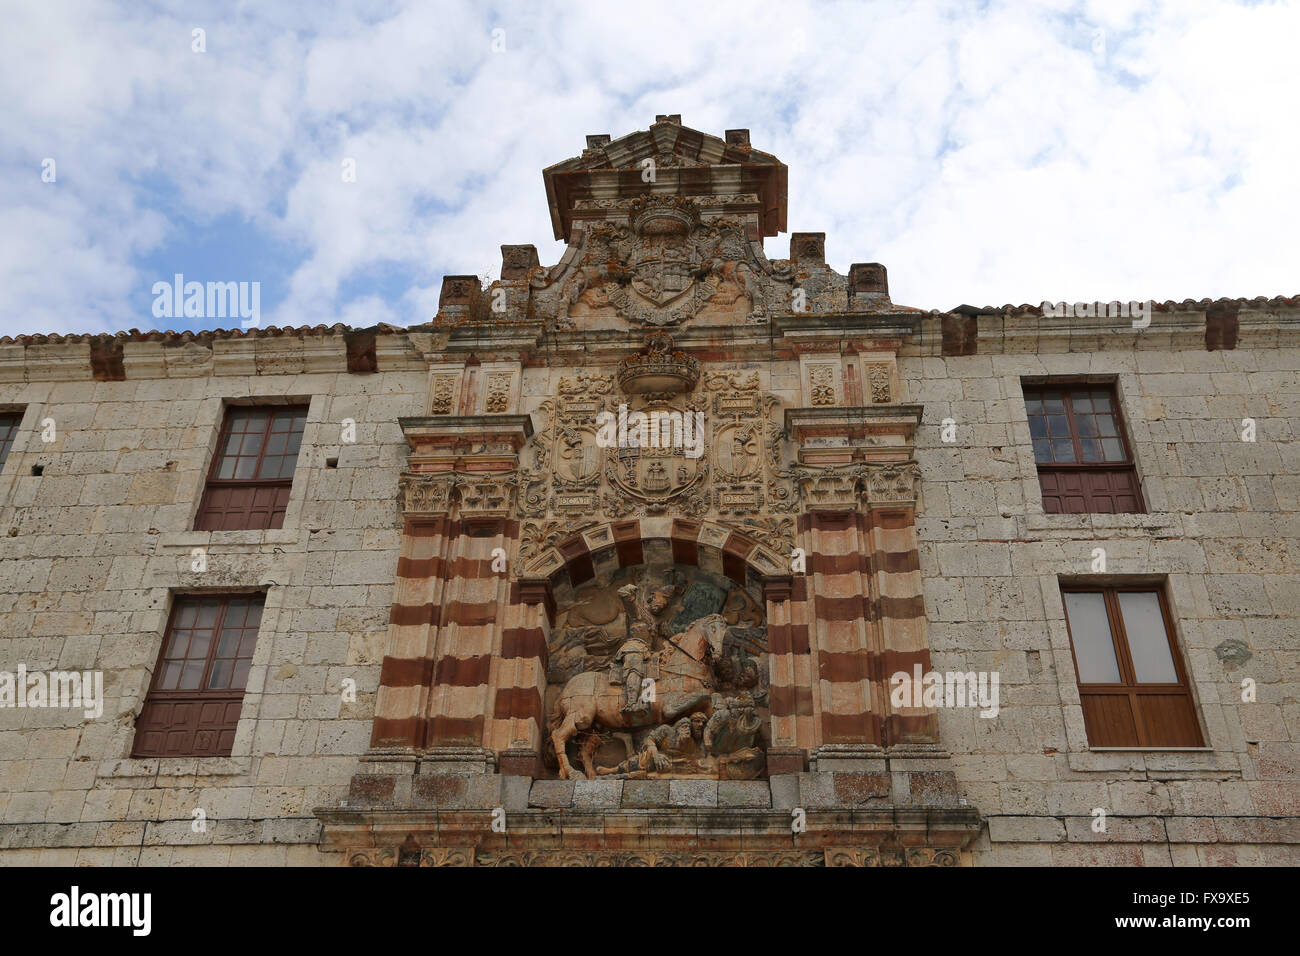 Sculpture of Saint James 'the Moorslayer' on the facade of the monastery of San Pedro de Cardena, Burgos, Spain. Stock Photo